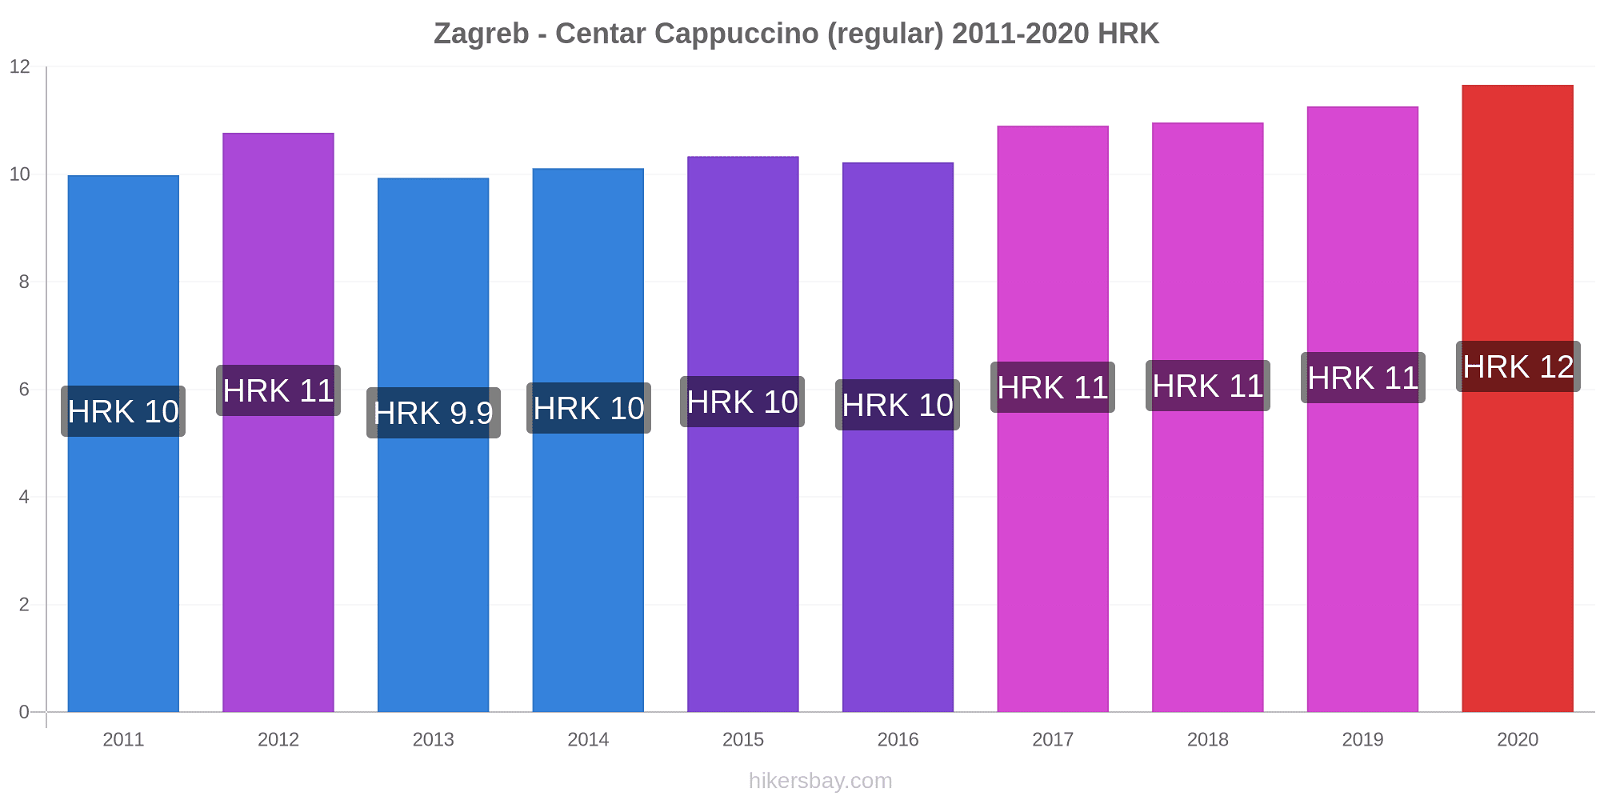 Zagreb - Centar variação de preço Capuccino (regular) hikersbay.com